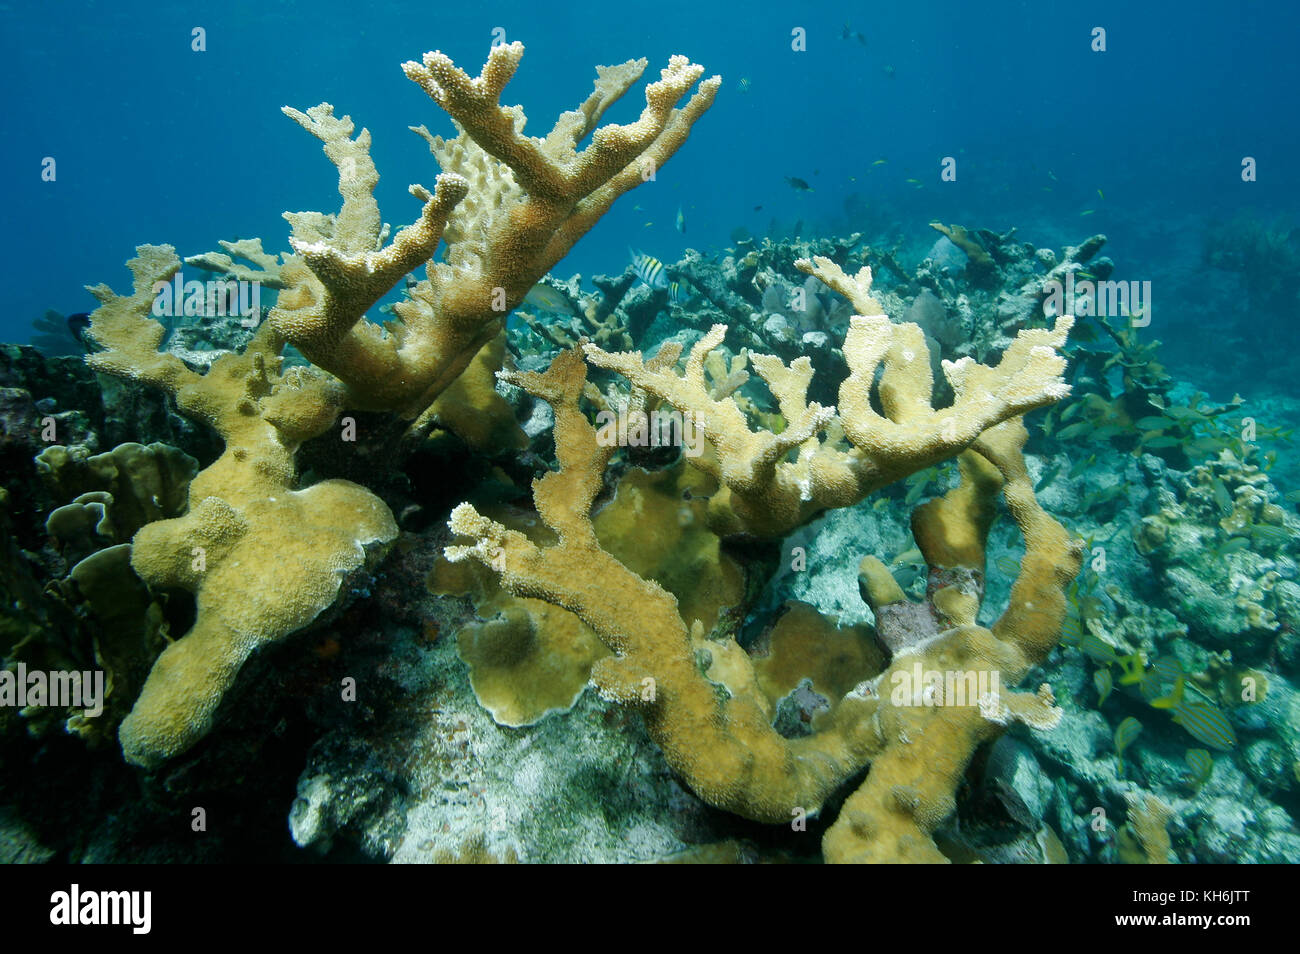 Elkhorn coral, Acropora palmata Stock Photo